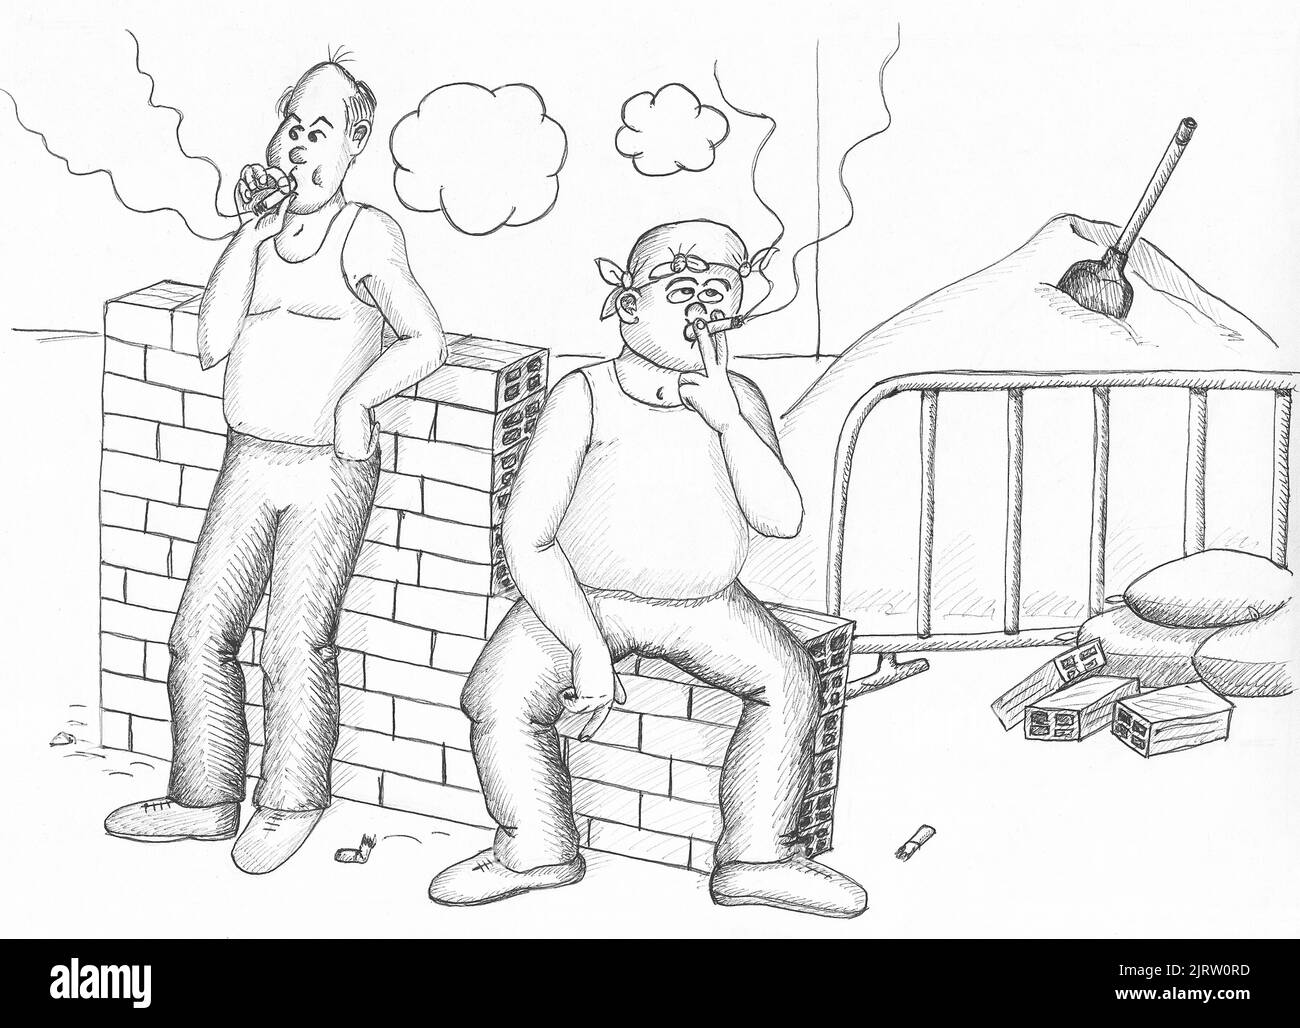 Zwei Bauarbeiter rauchen. Abbildung. Stockfoto